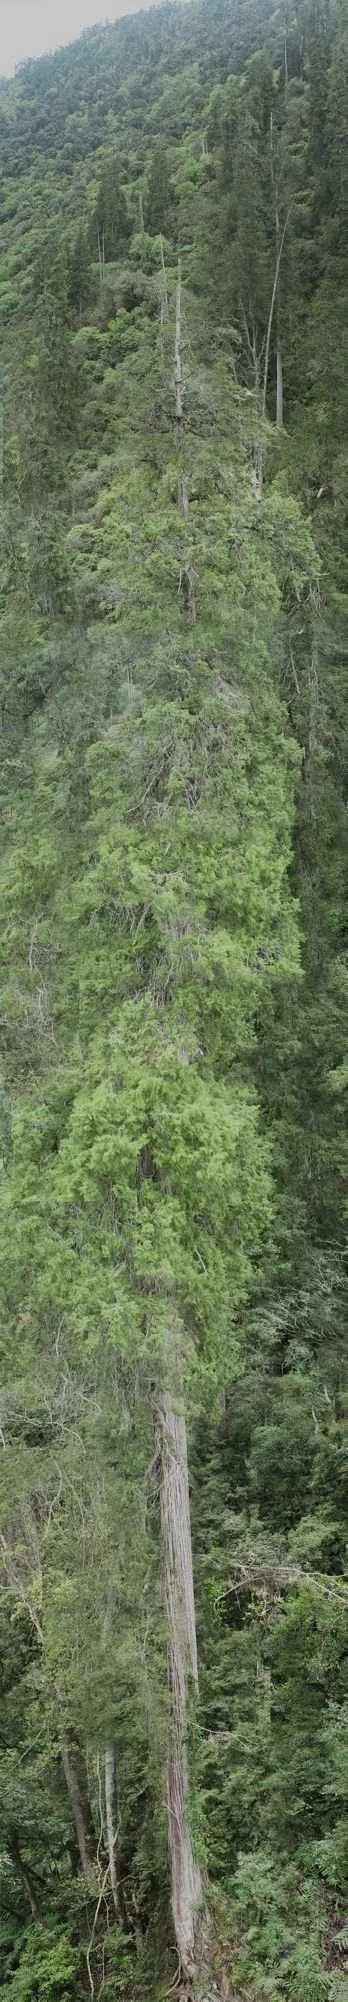 西藏102.3米“高树”刷新亚洲纪录